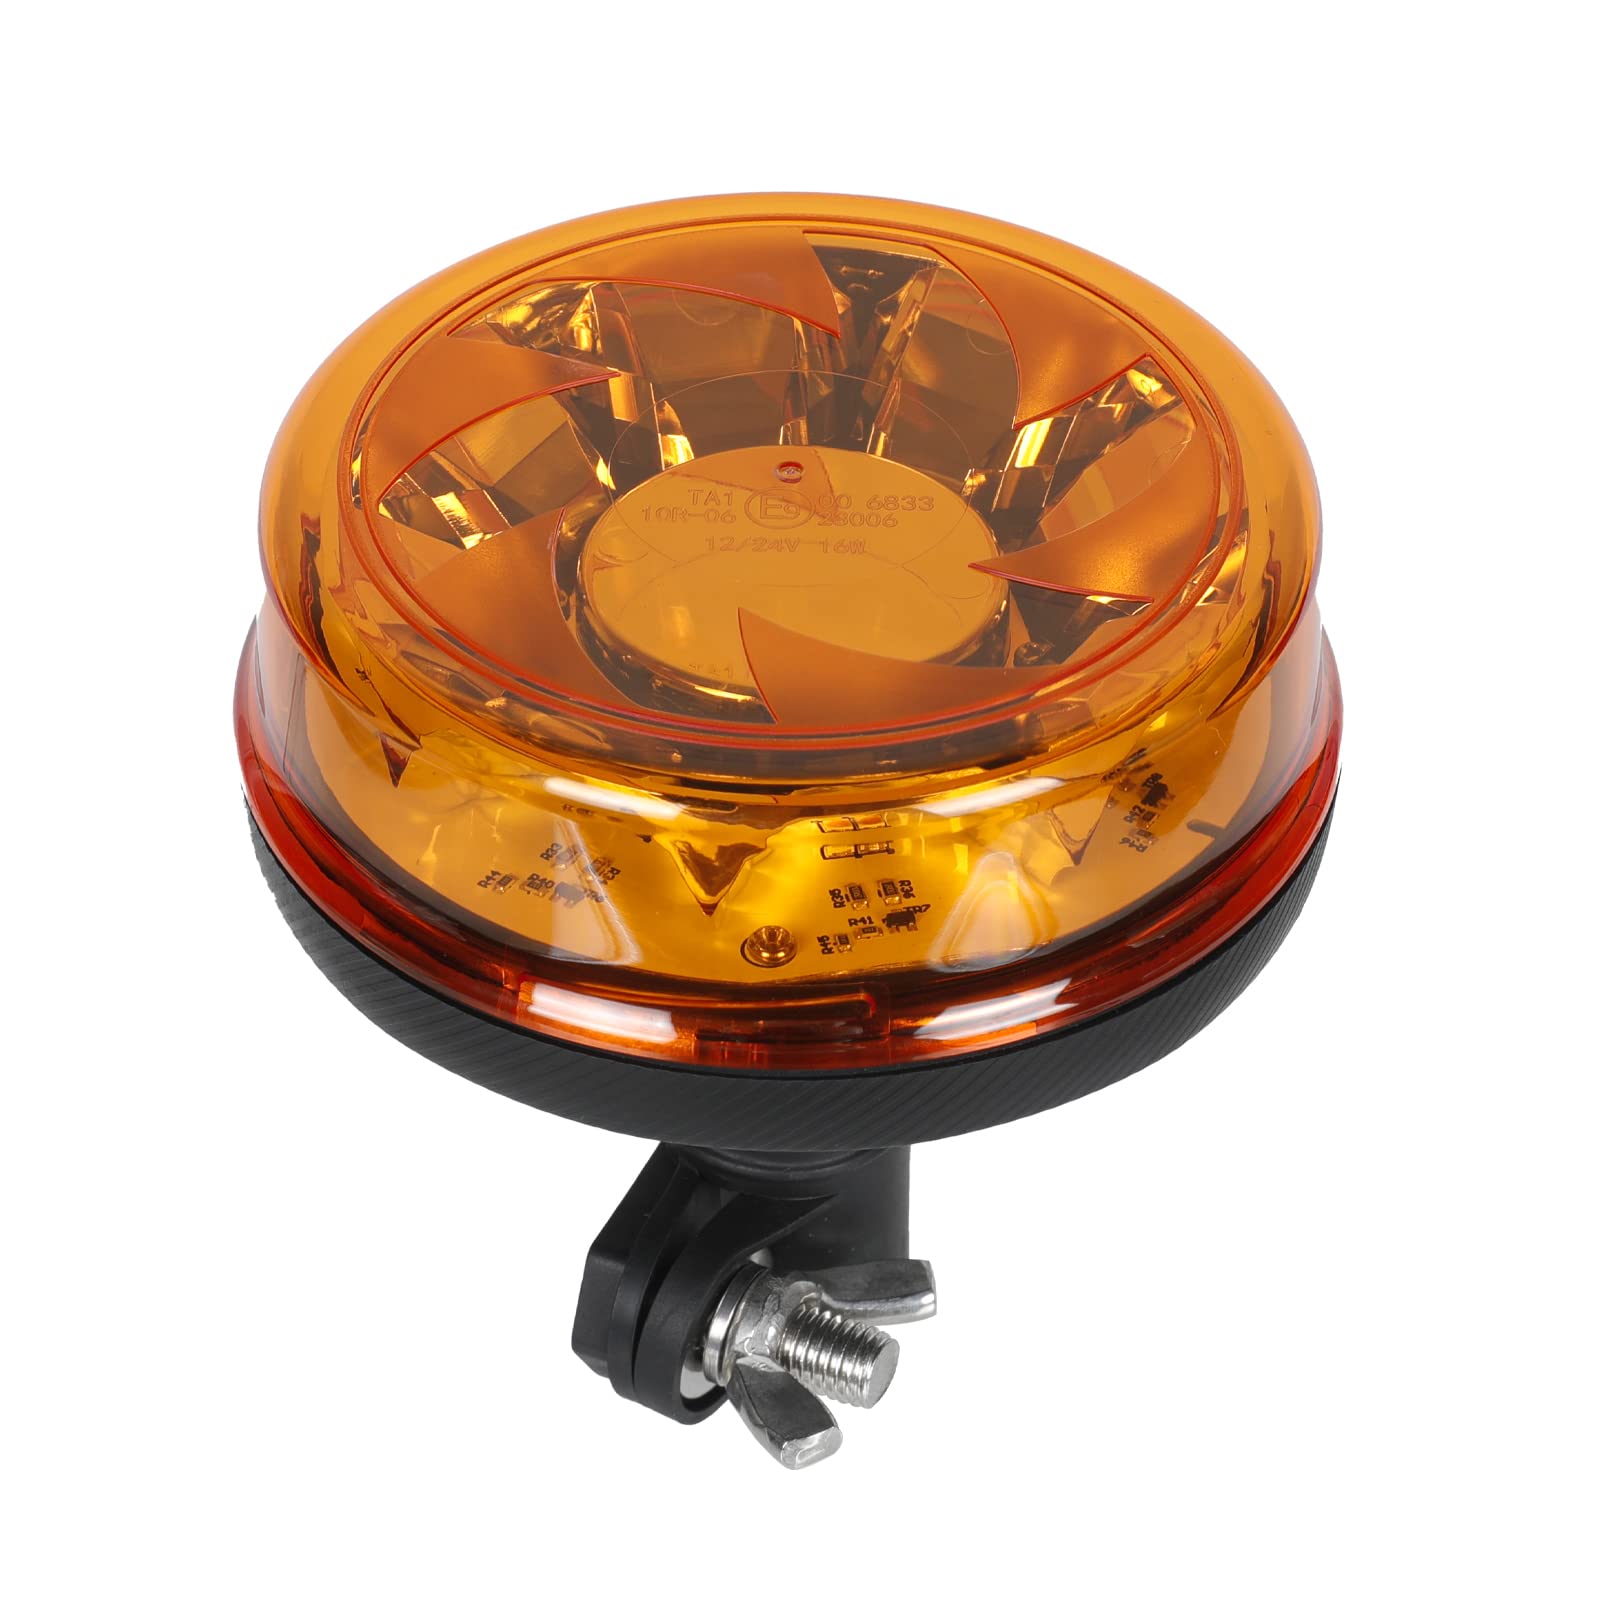 Qiping 12/24V LED Blitz Kennleuchte Orange Warnleuchte Amber Blitzlicht Gelb Strobe Light - ECE E9-geprüft - Geschraubt von Qiping